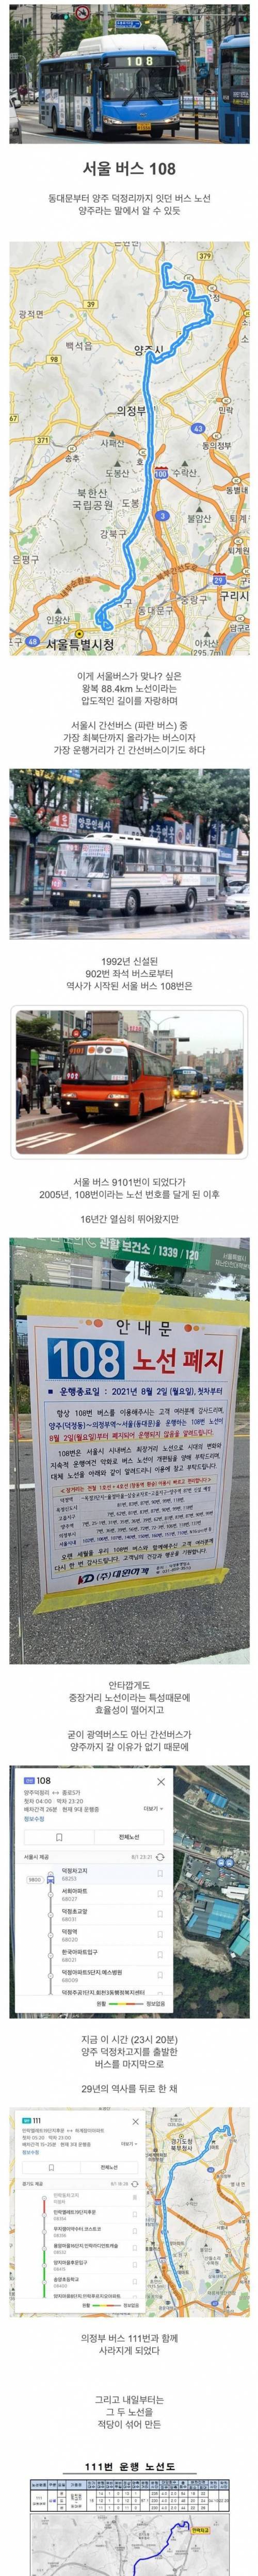 10 지금은 사라진 서울에서 가장 긴 버스 노선.jpg